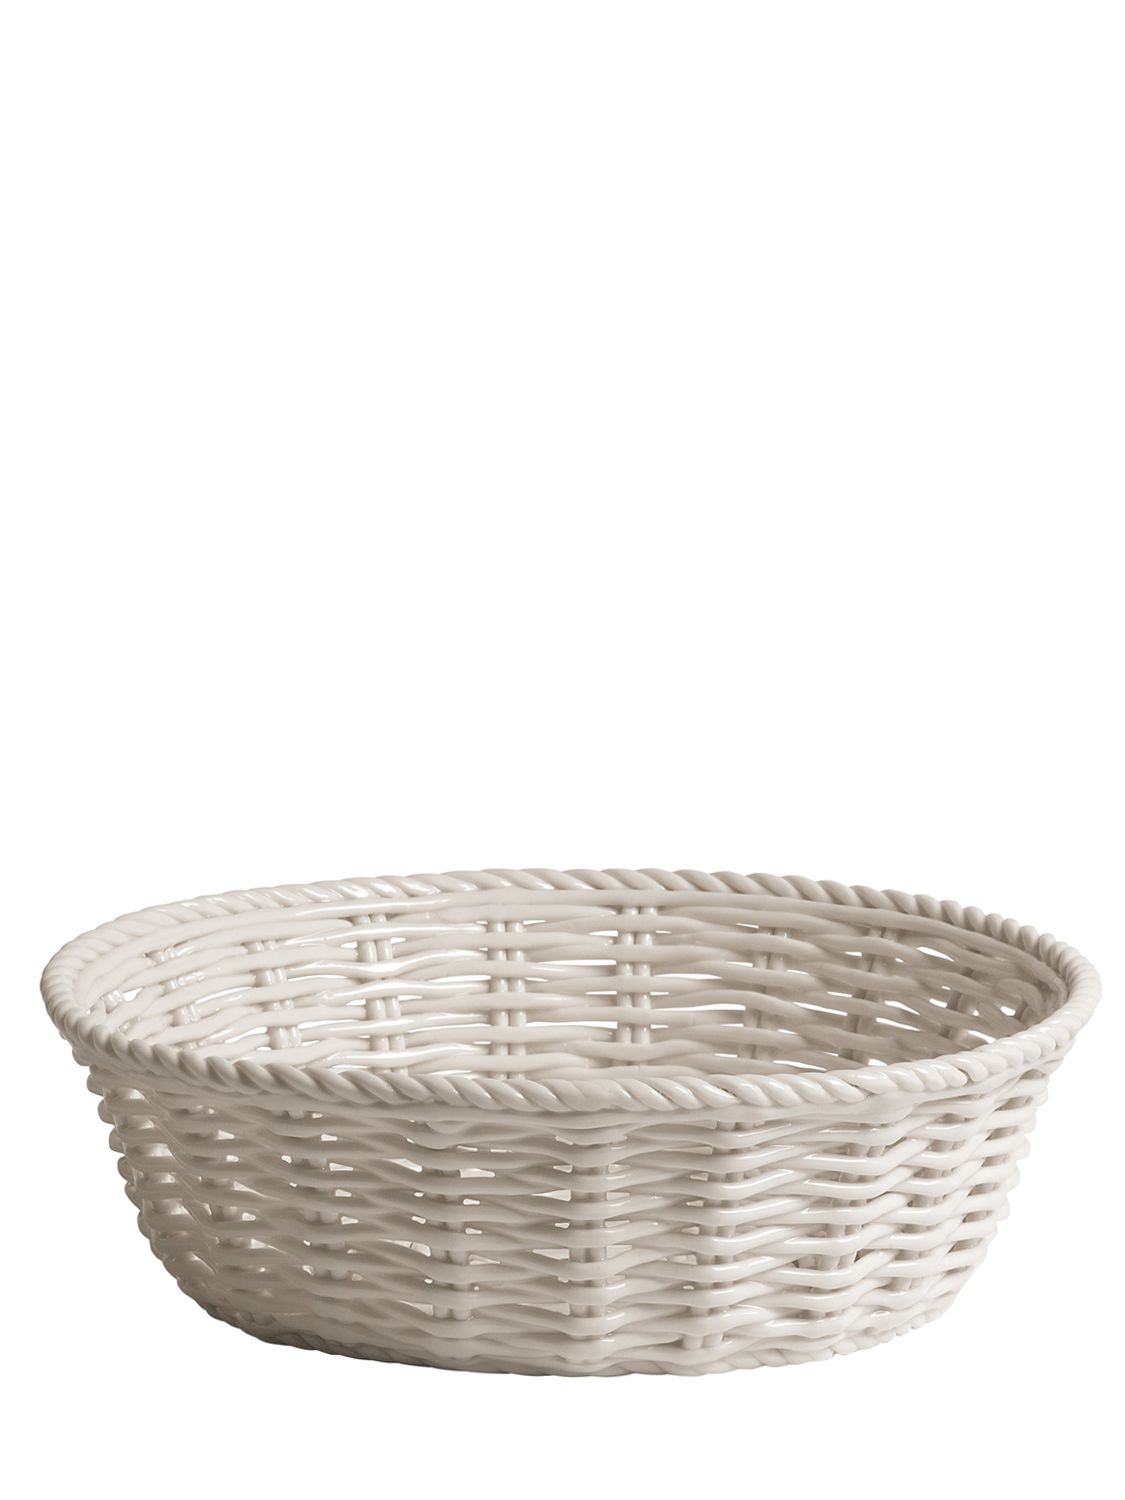 Image of Estetico Quotidian Porcelain Basket